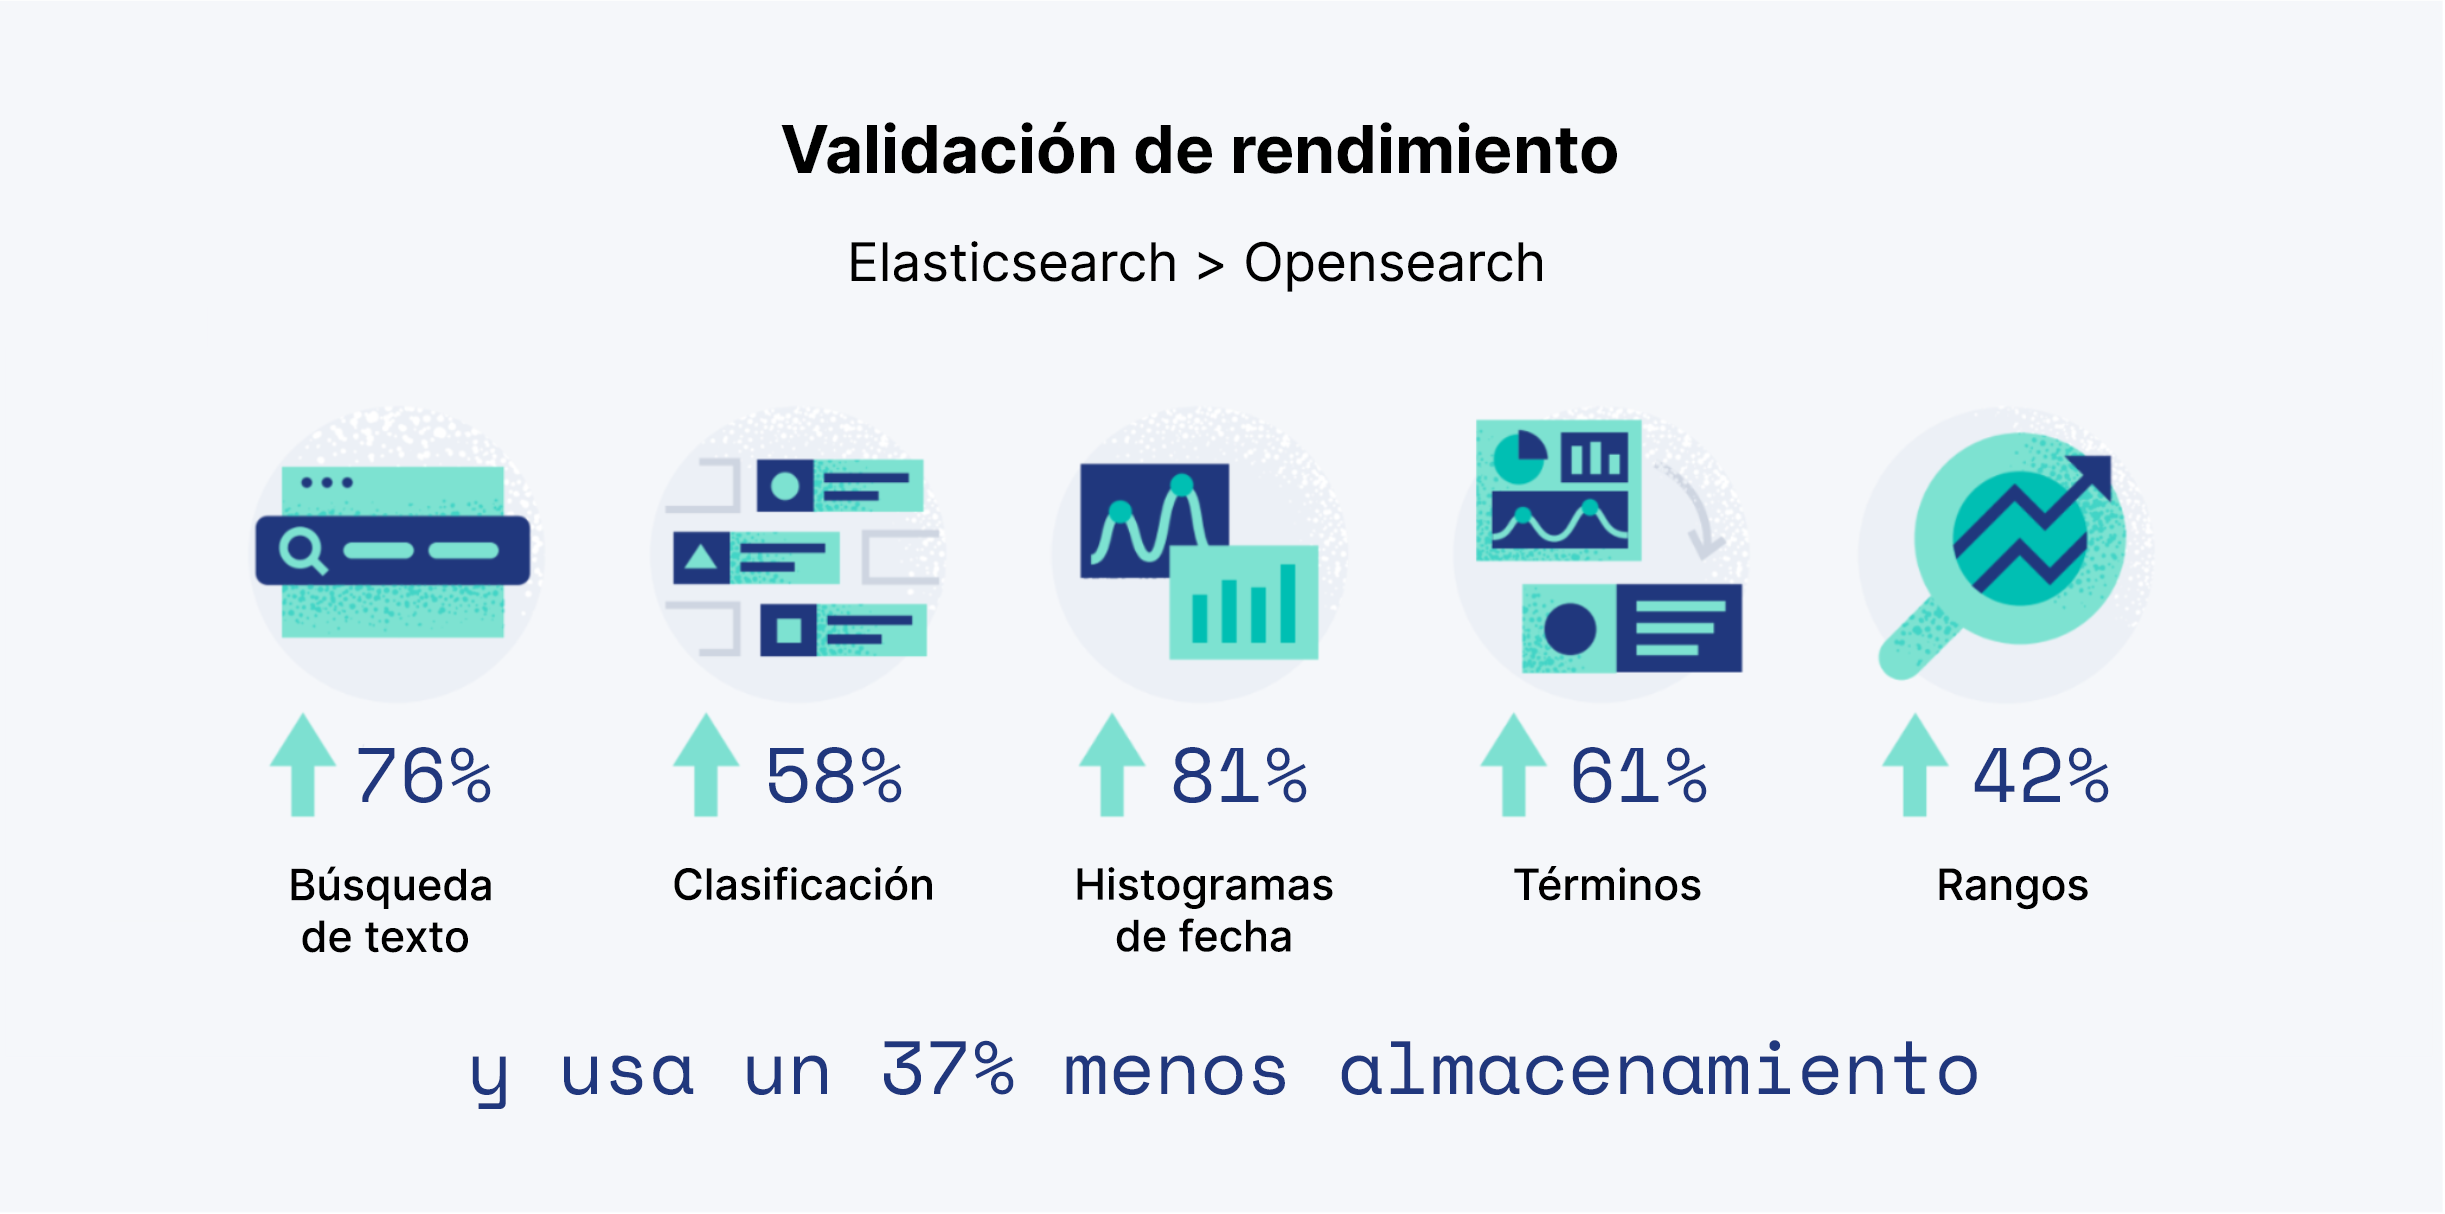 Validación de rendimiento: Elasticsearch > Opensearch